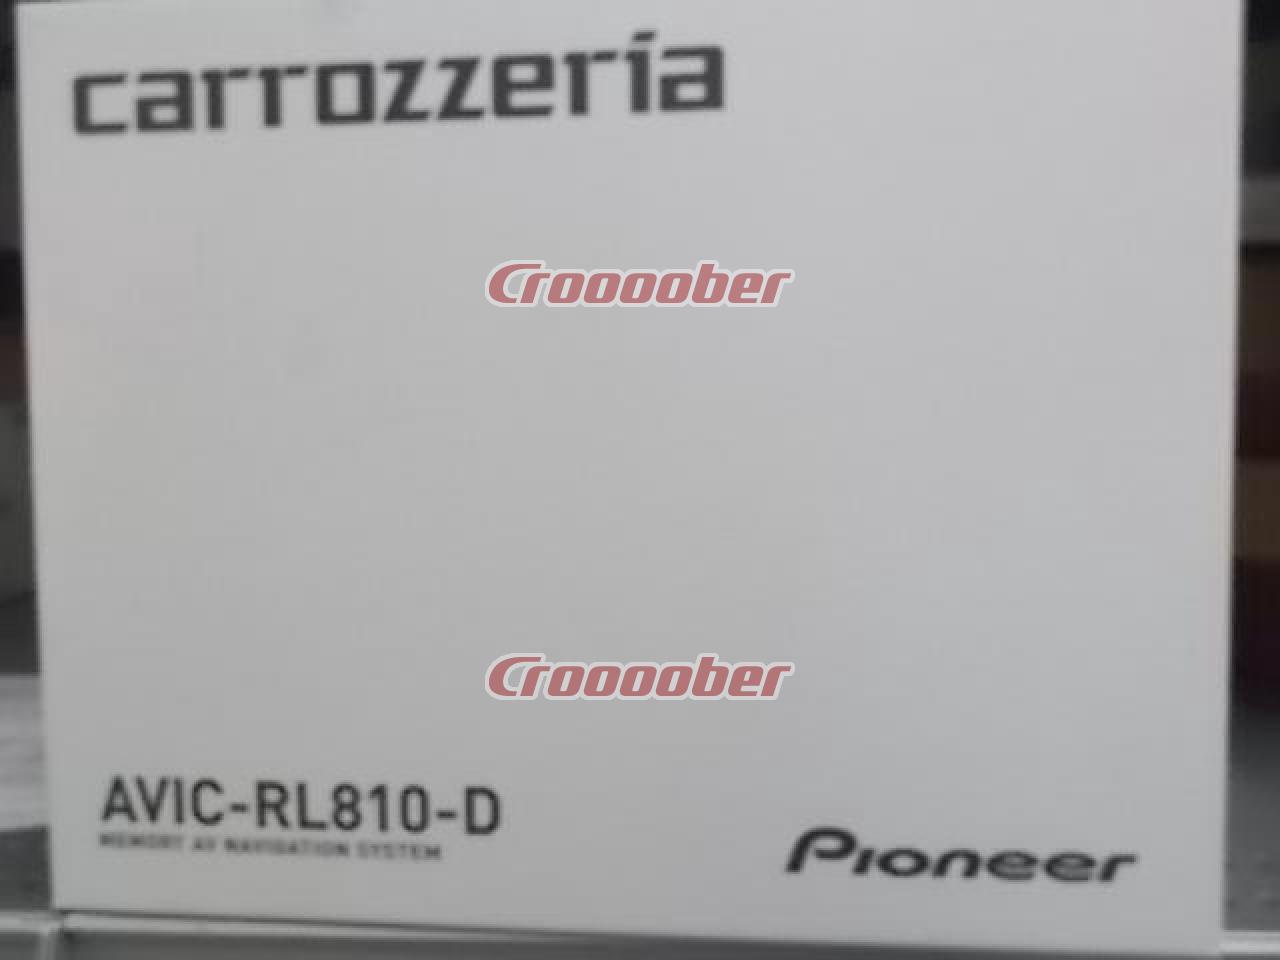 値下げ!!】 carrozzeria(カロッツェリア) AVIC-RL810-D (8インチ/車種 